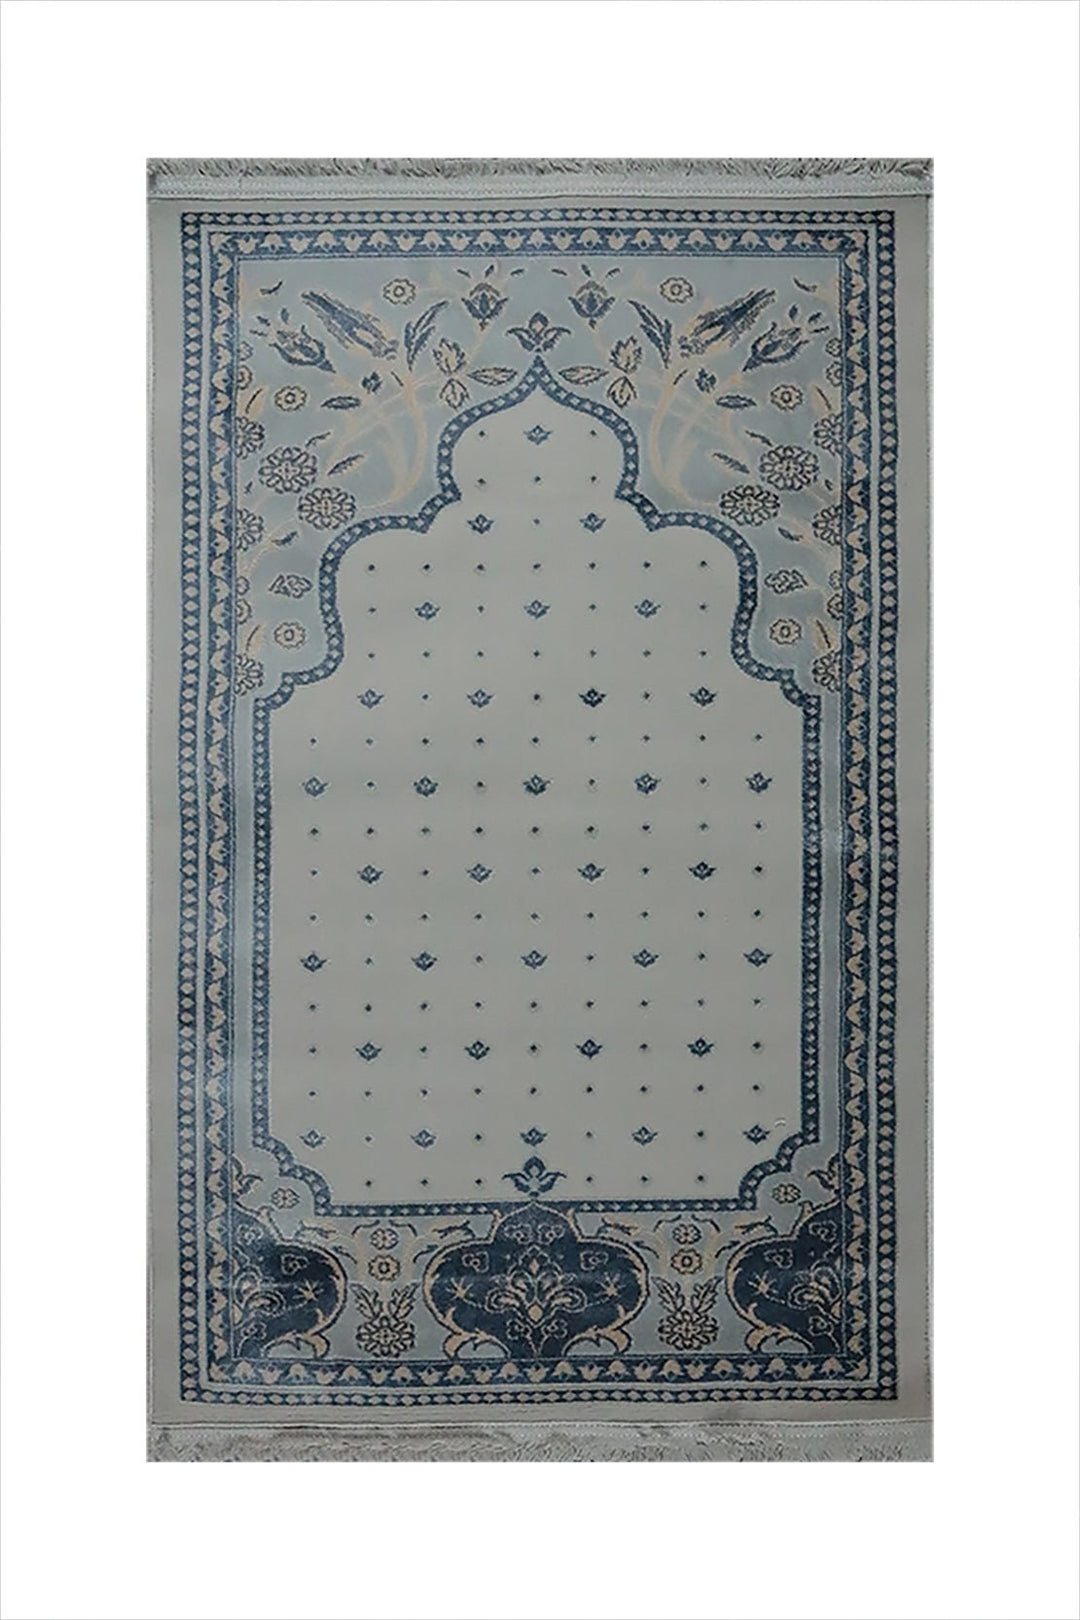 Turkish Bamboo Sajjadeh Janamaz - 2.6 x 3.9 FT - Gray qand Blue - V Surfaces